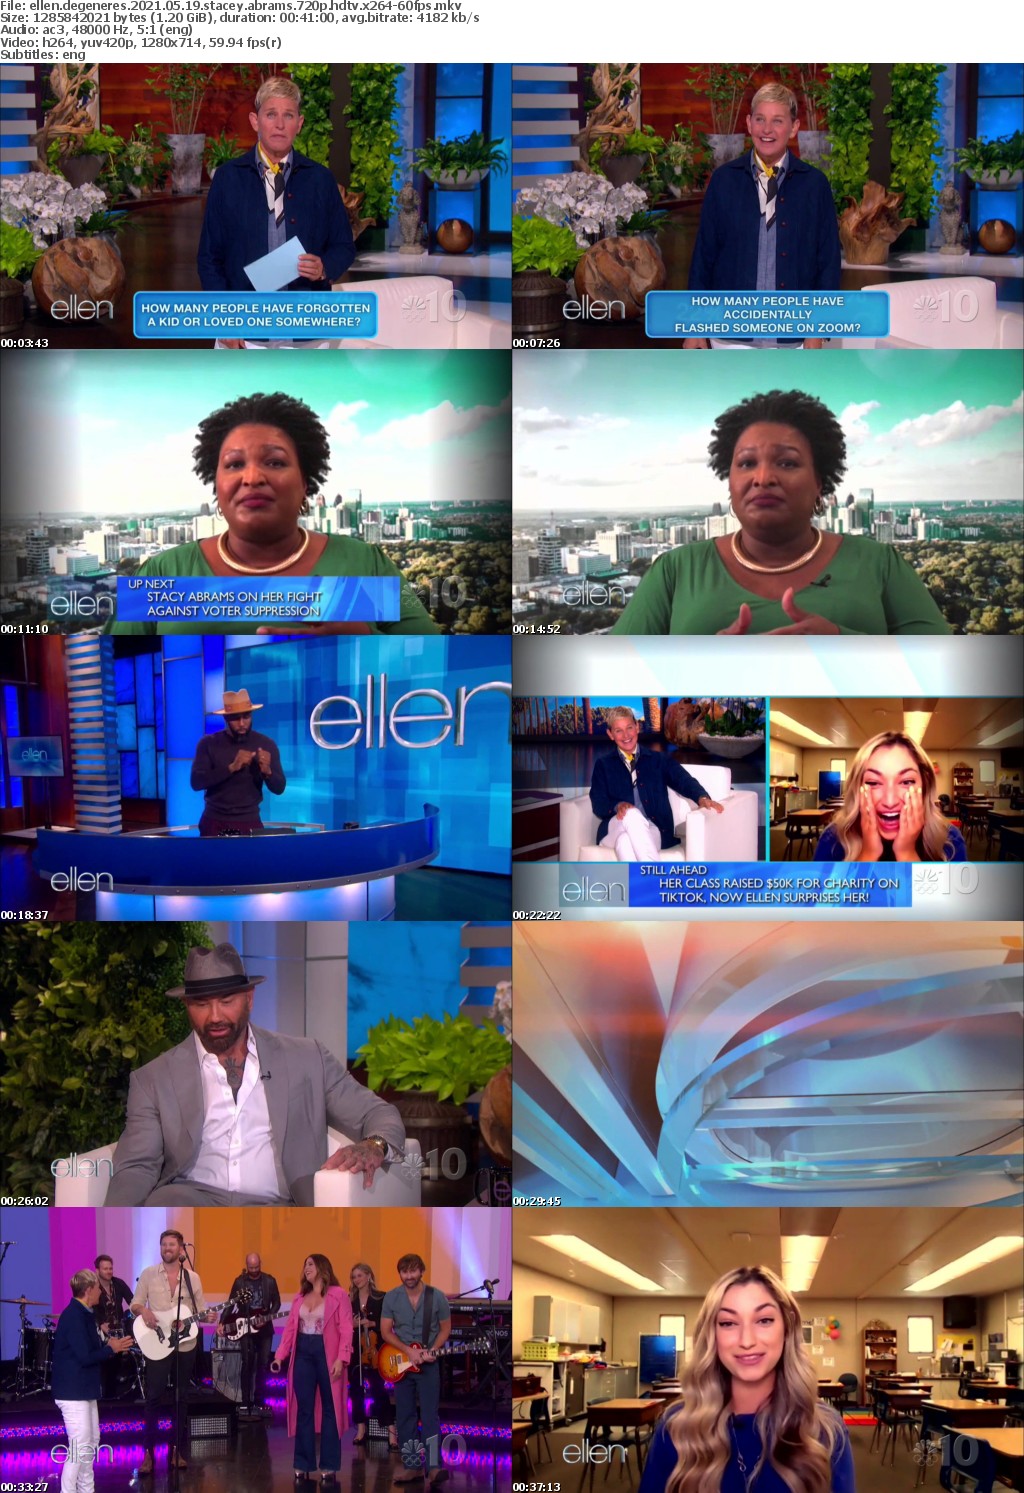 Ellen DeGeneres 2021 05 19 Stacey Abrams 720p HDTV x264-60FPS